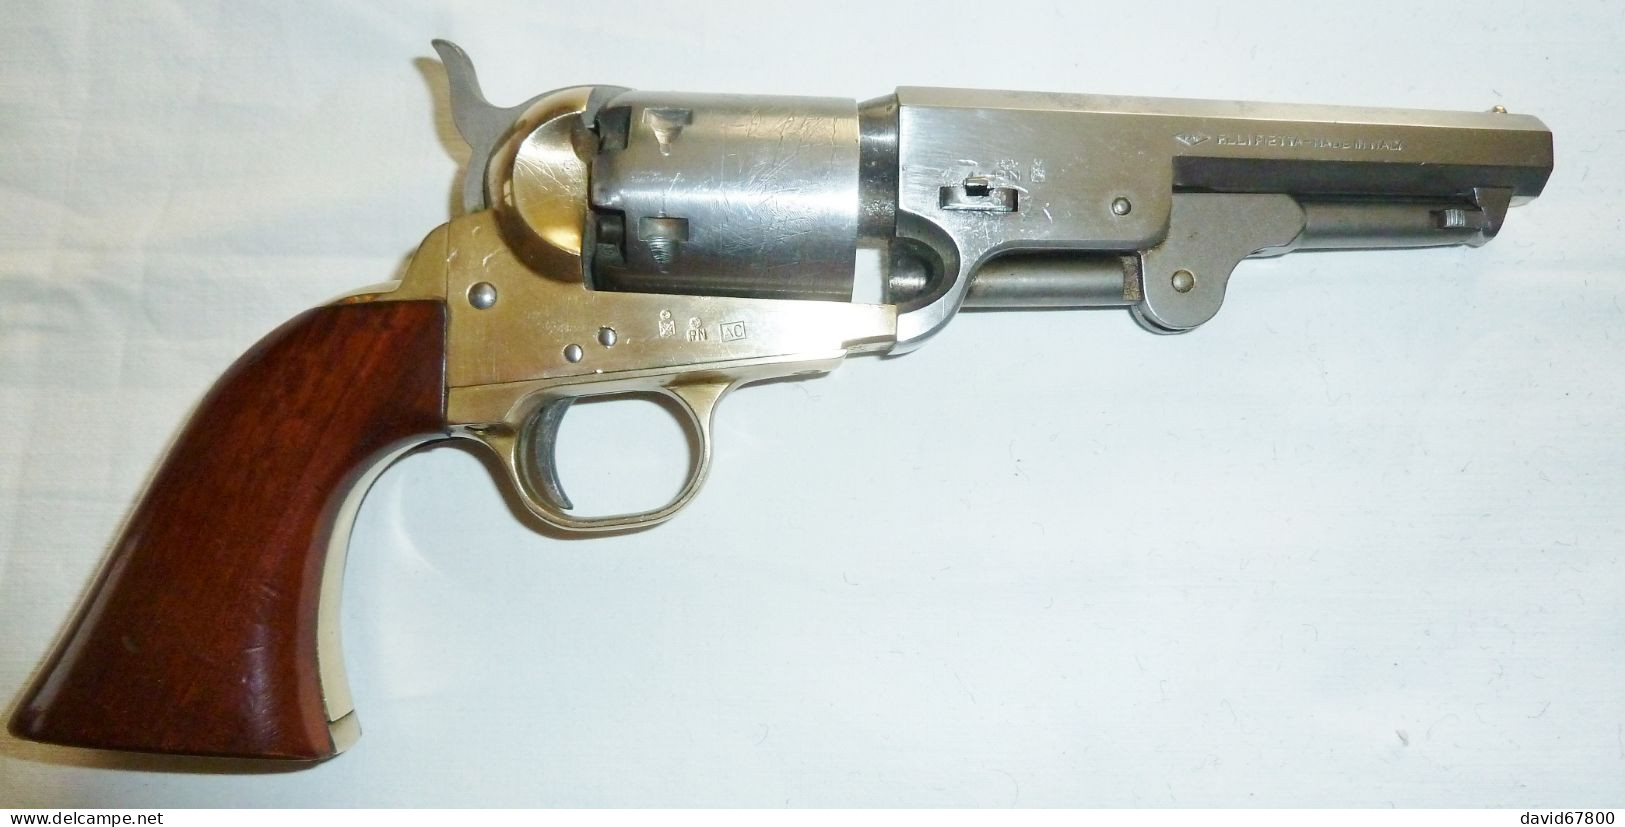 PISTOLET OU REVOLVER PIETTA NAVY YANK SHERIFF CAL 36 LE COLT 1851 A POUDRE NOIR ITALY - Armas De Colección